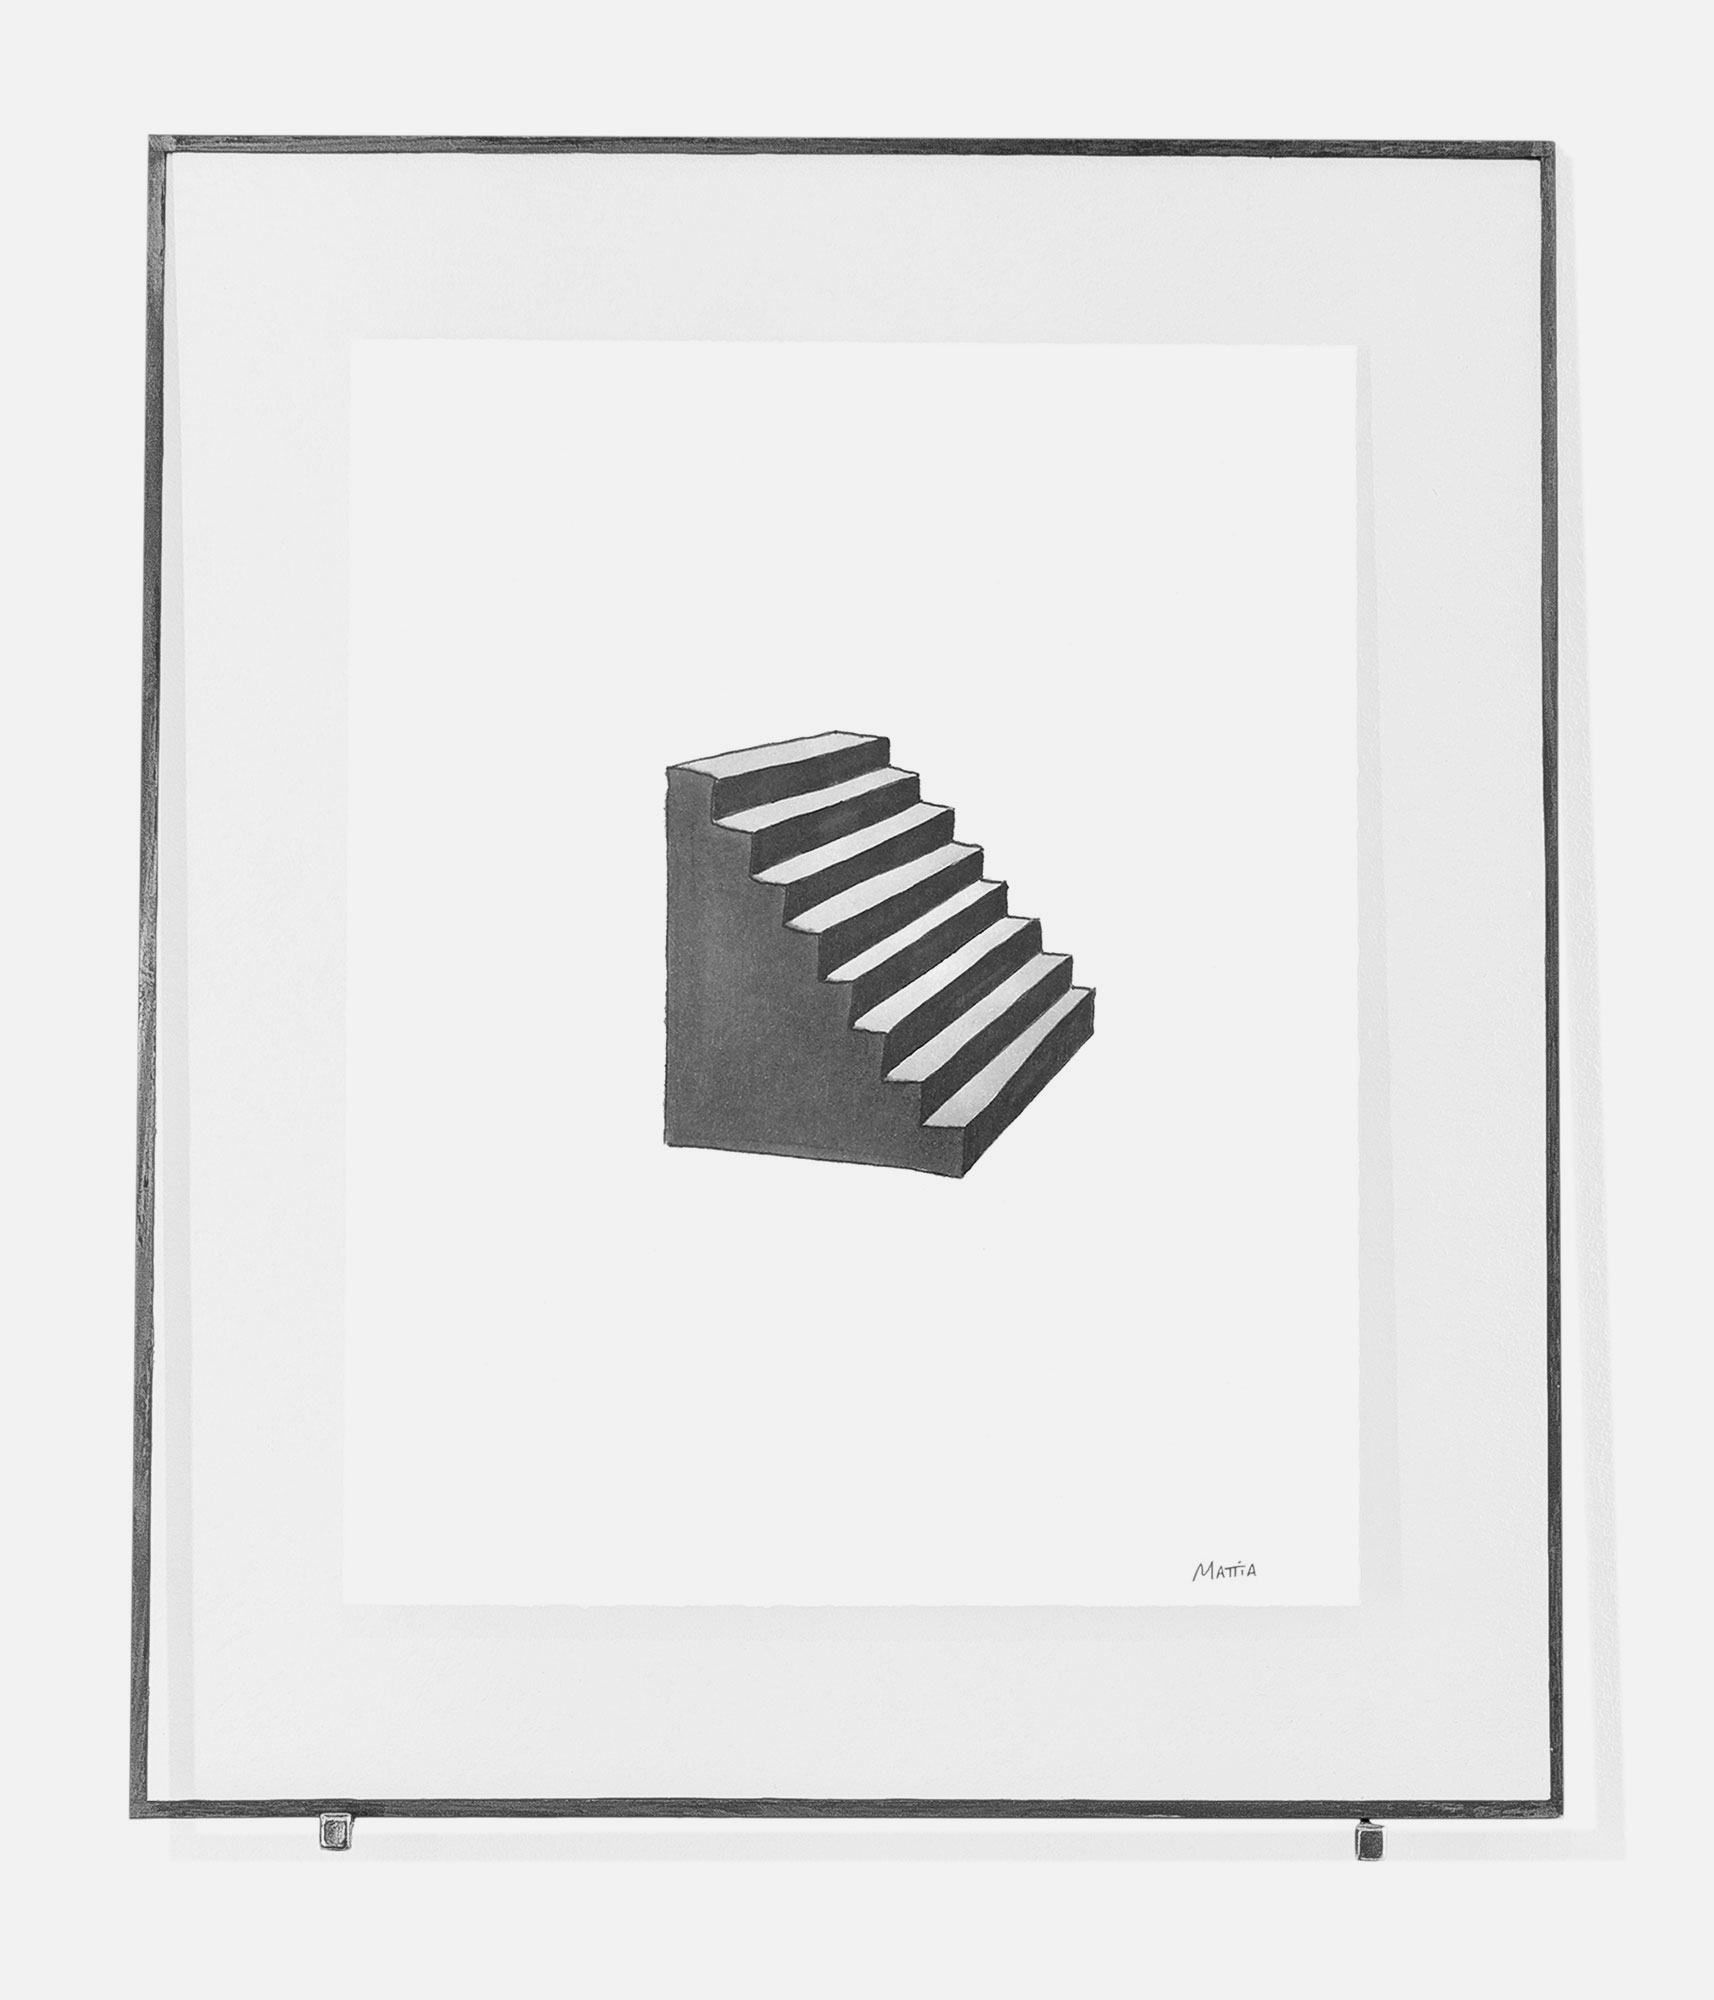 mattia listowski art décoration architecture design dessin réversible encre feutre à alcool bic noir et blanc objet 0002 escalier série escalier oeuvre édition limitée signée paris bruxelles 2021